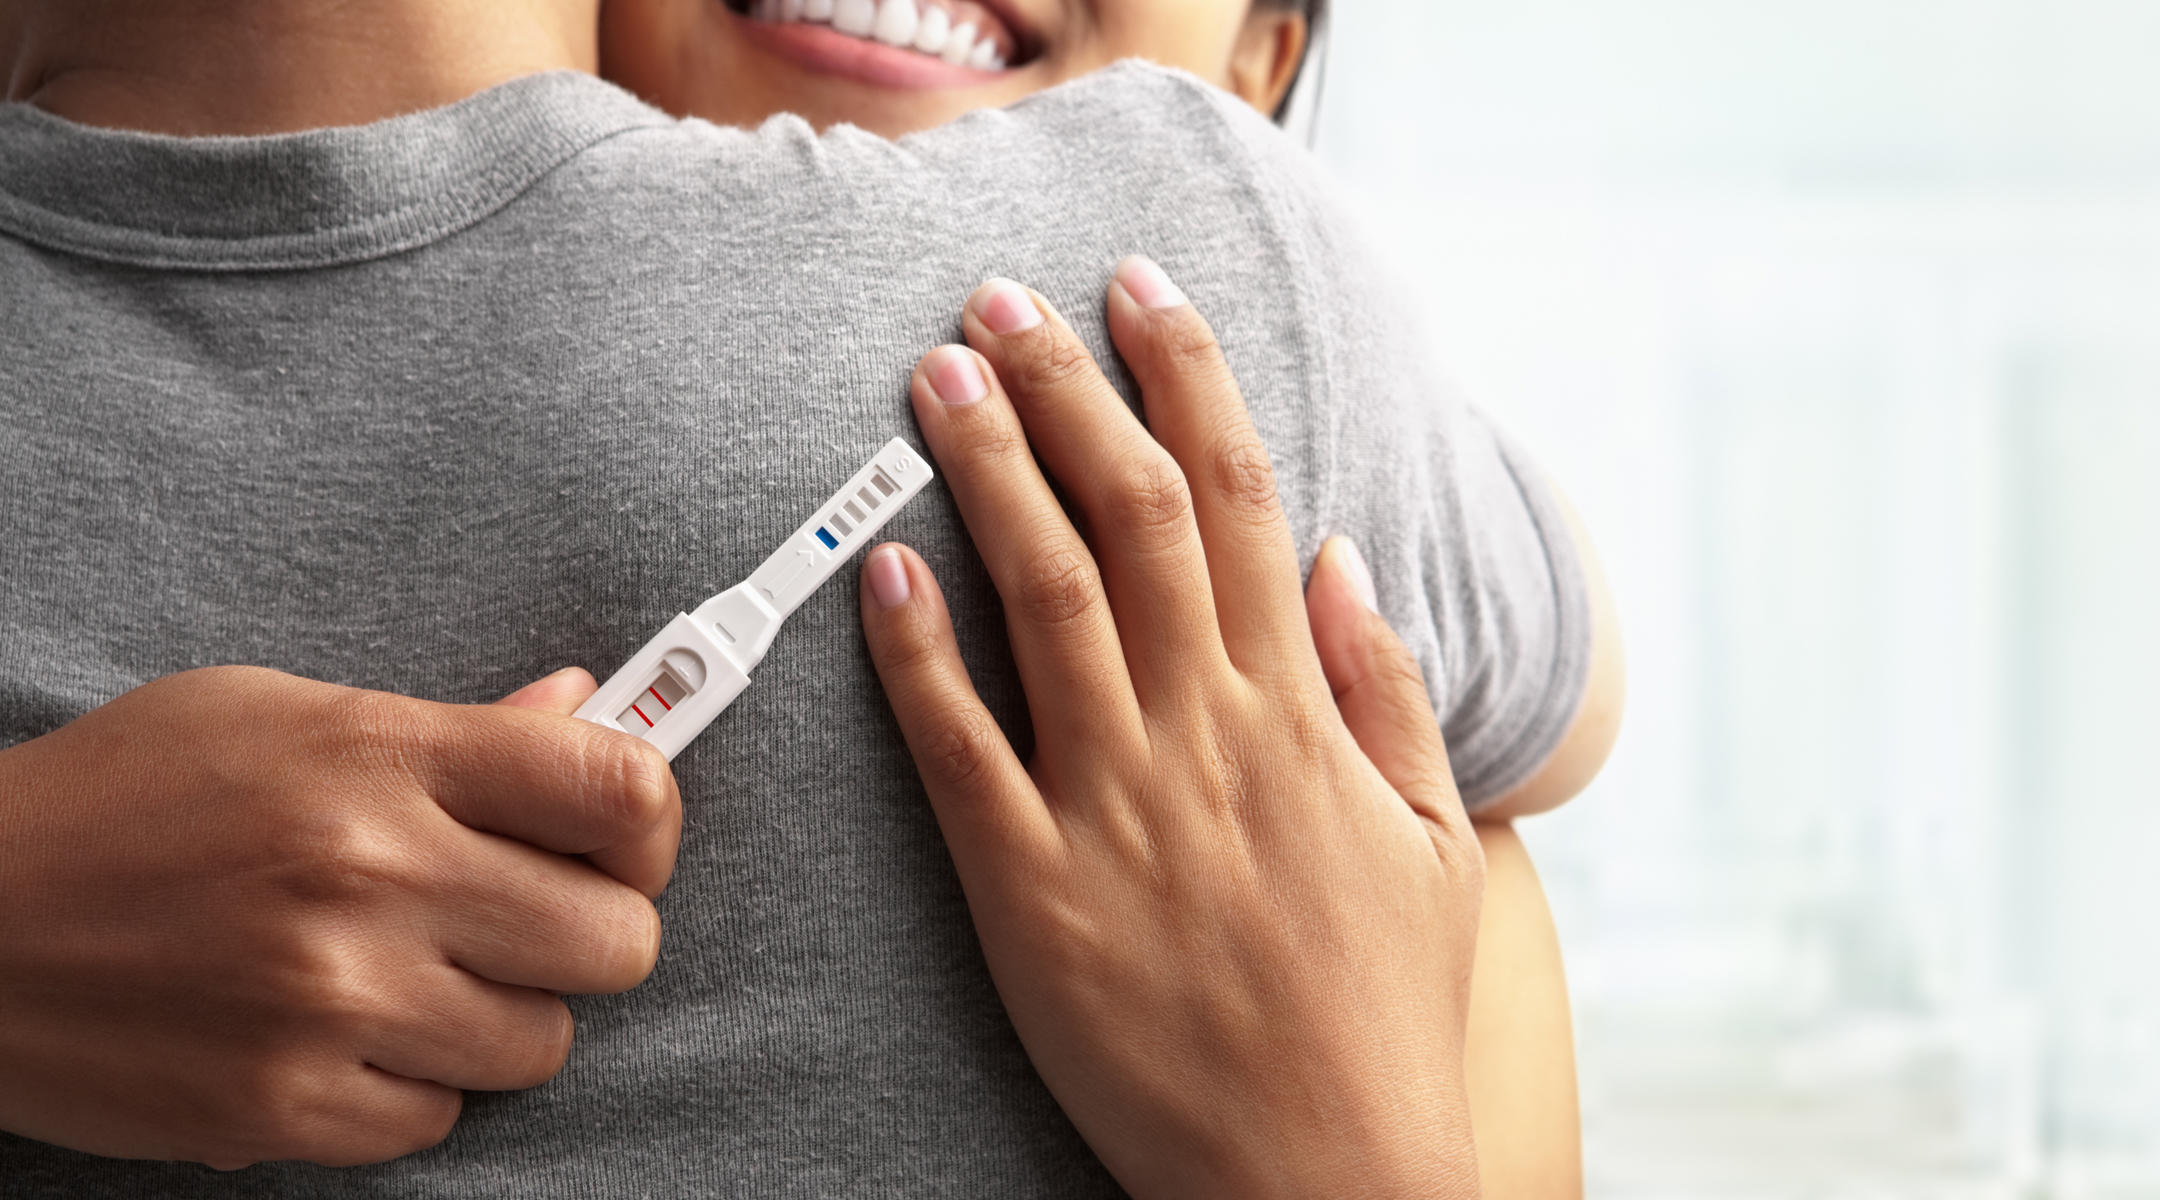 Комплекс Бременност от Together Health подкрепя периода на цялата бременност и предпазва от спонтанен аборт.